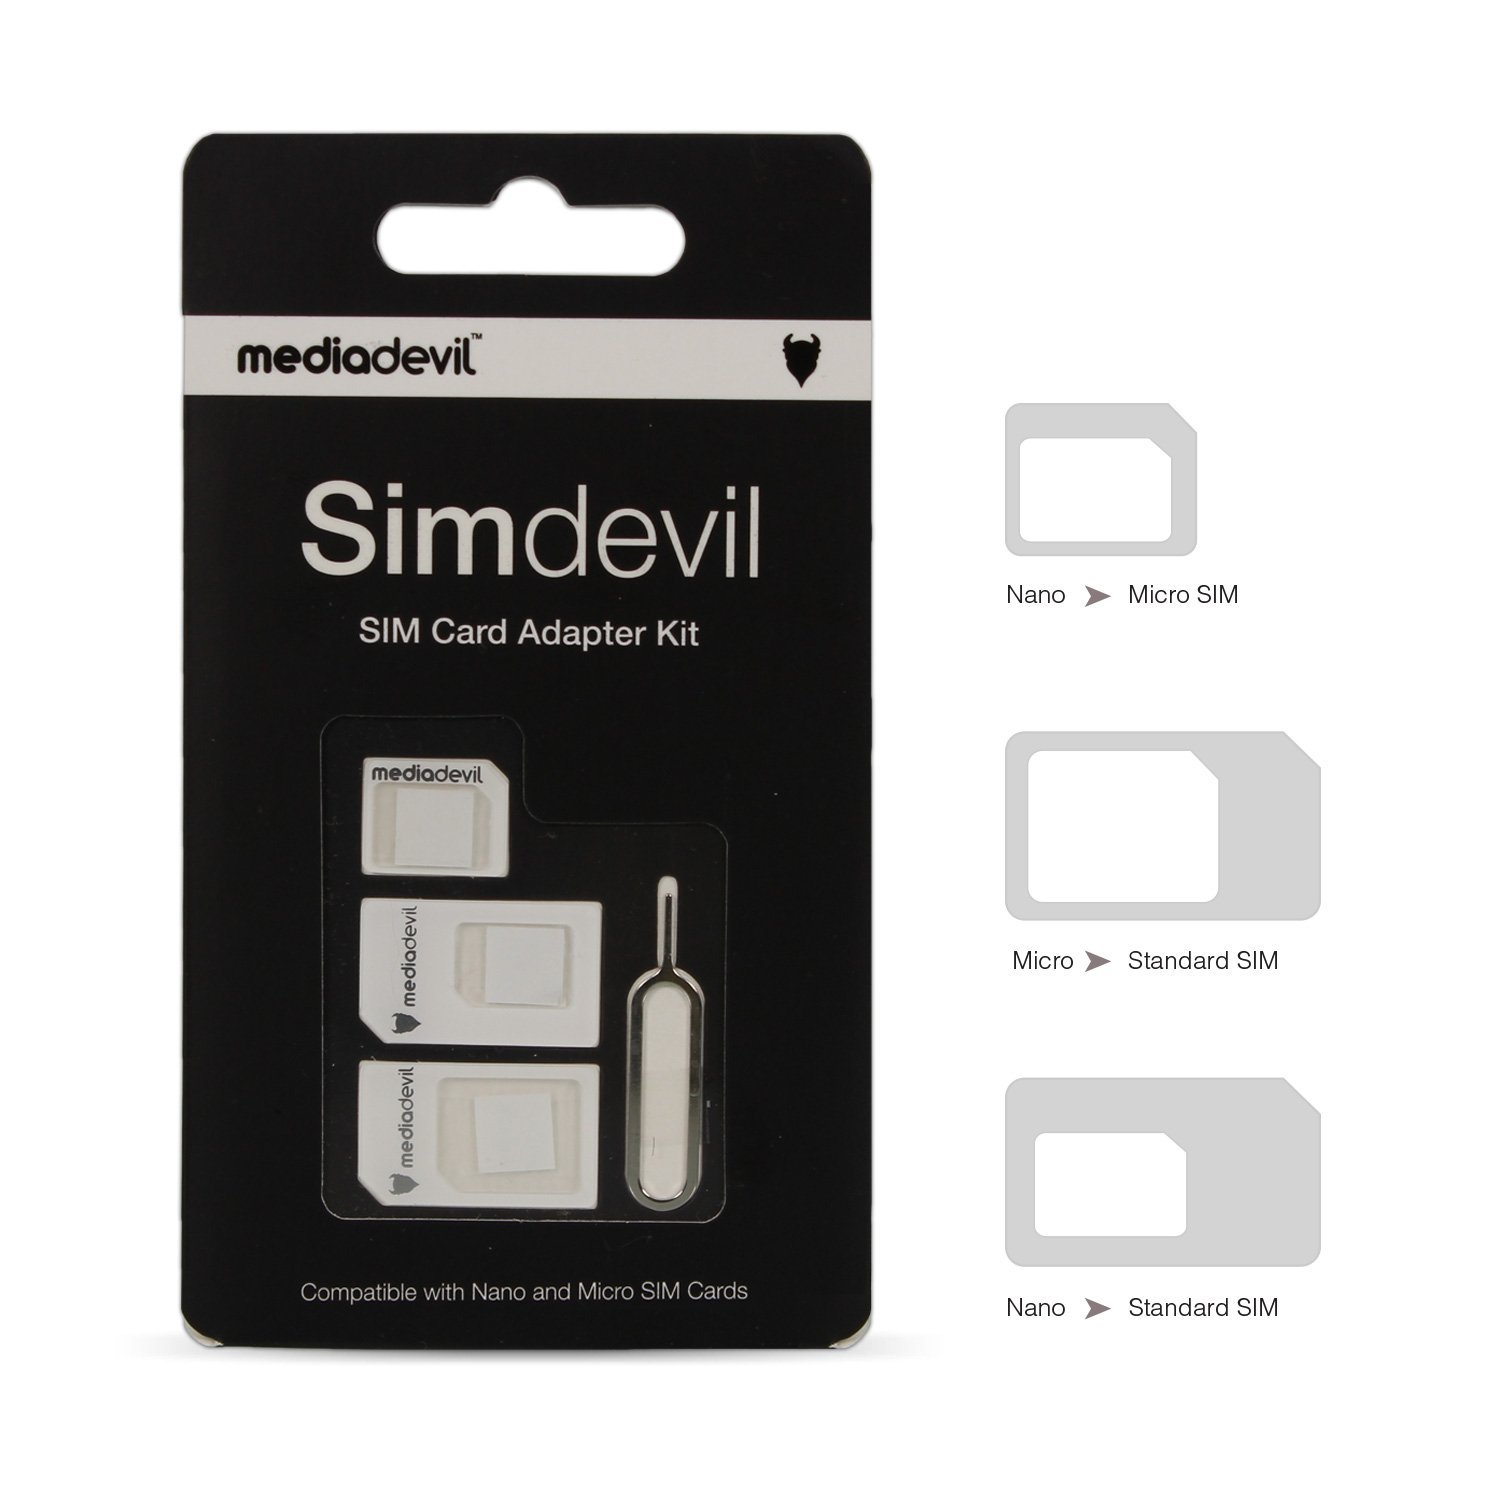 MediaDevil Simdevil 3-in-1 SIM card adapter kit (Nano / Micro / Standard)